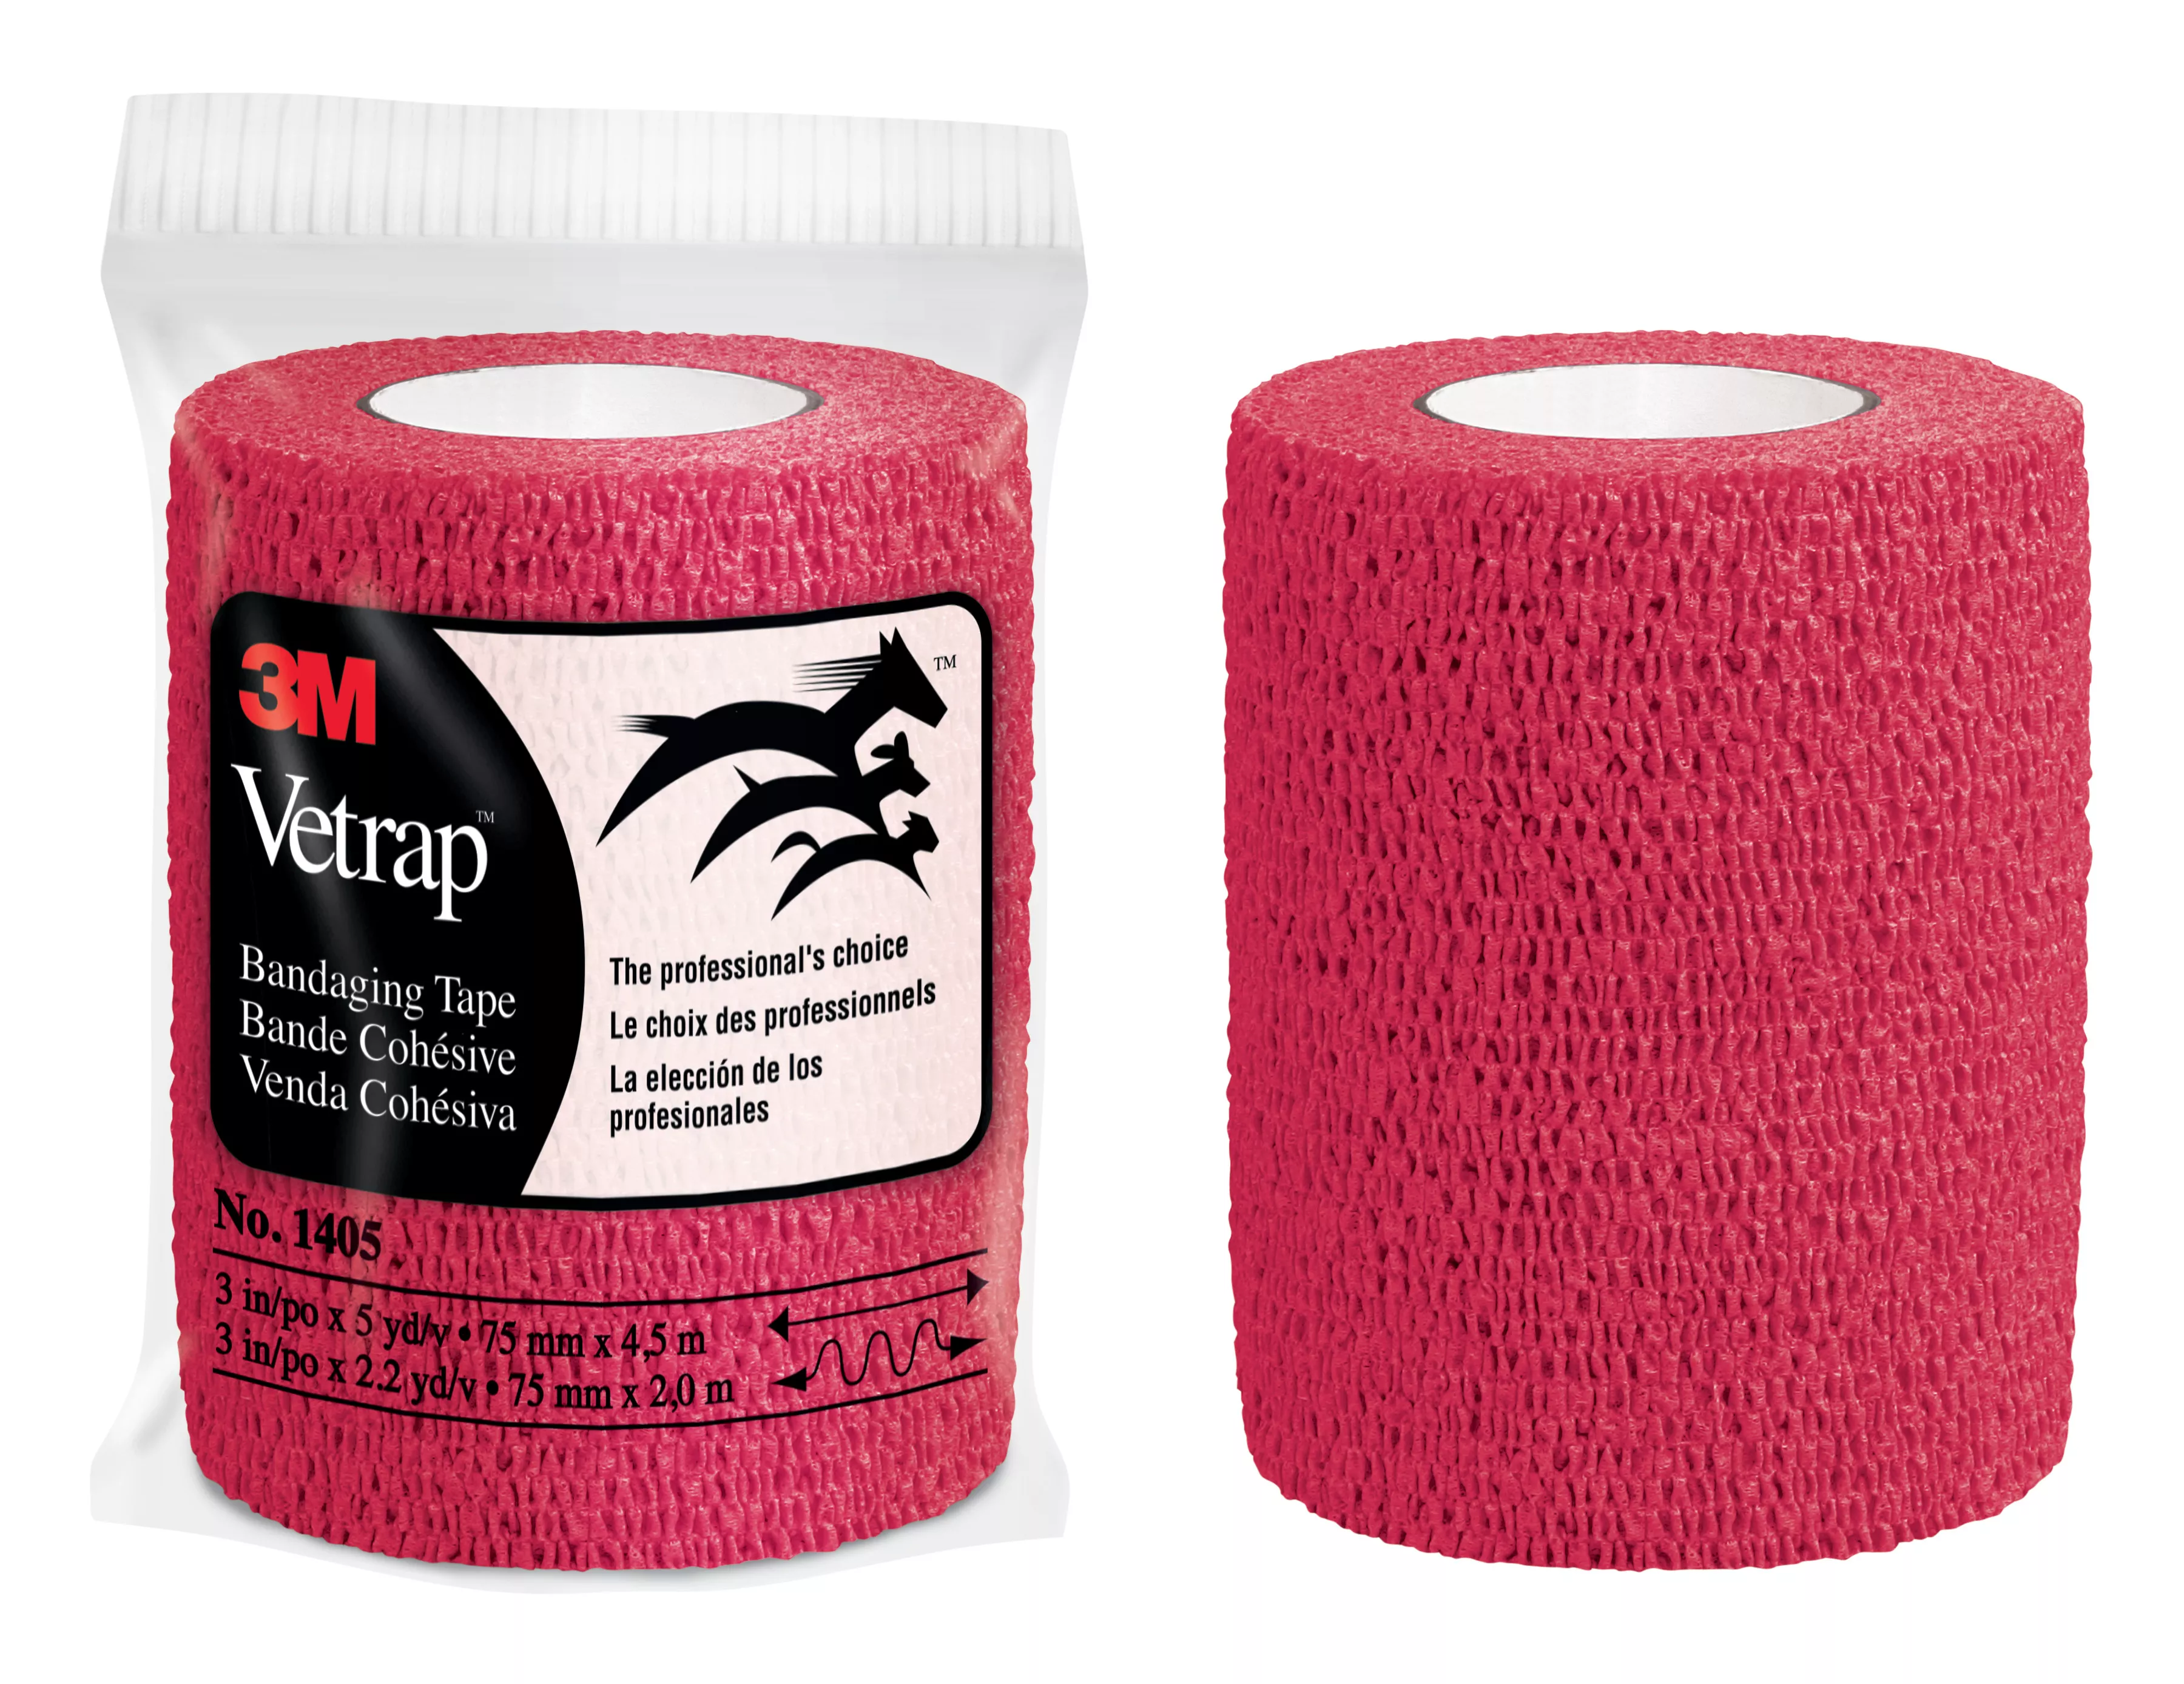 3M™ Vetrap™ Bandaging Tape Bulk Pack, 1405R Bulk Red